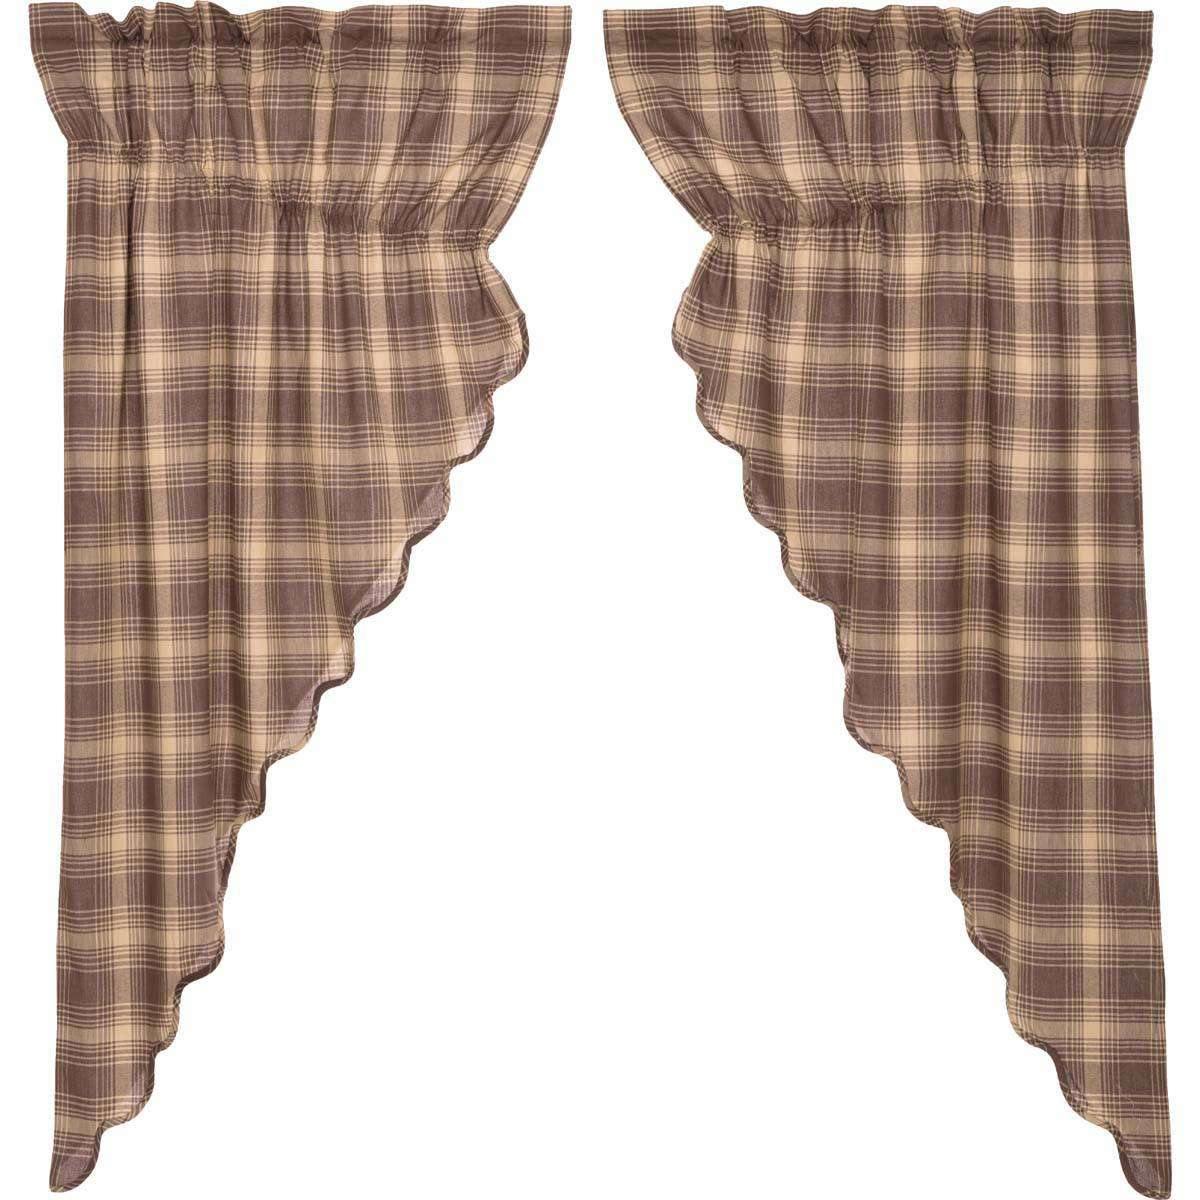 Dawson Star Scalloped Prairie Short Panel Curtain Curtain Set of 2 63x36x18 - The Fox Decor